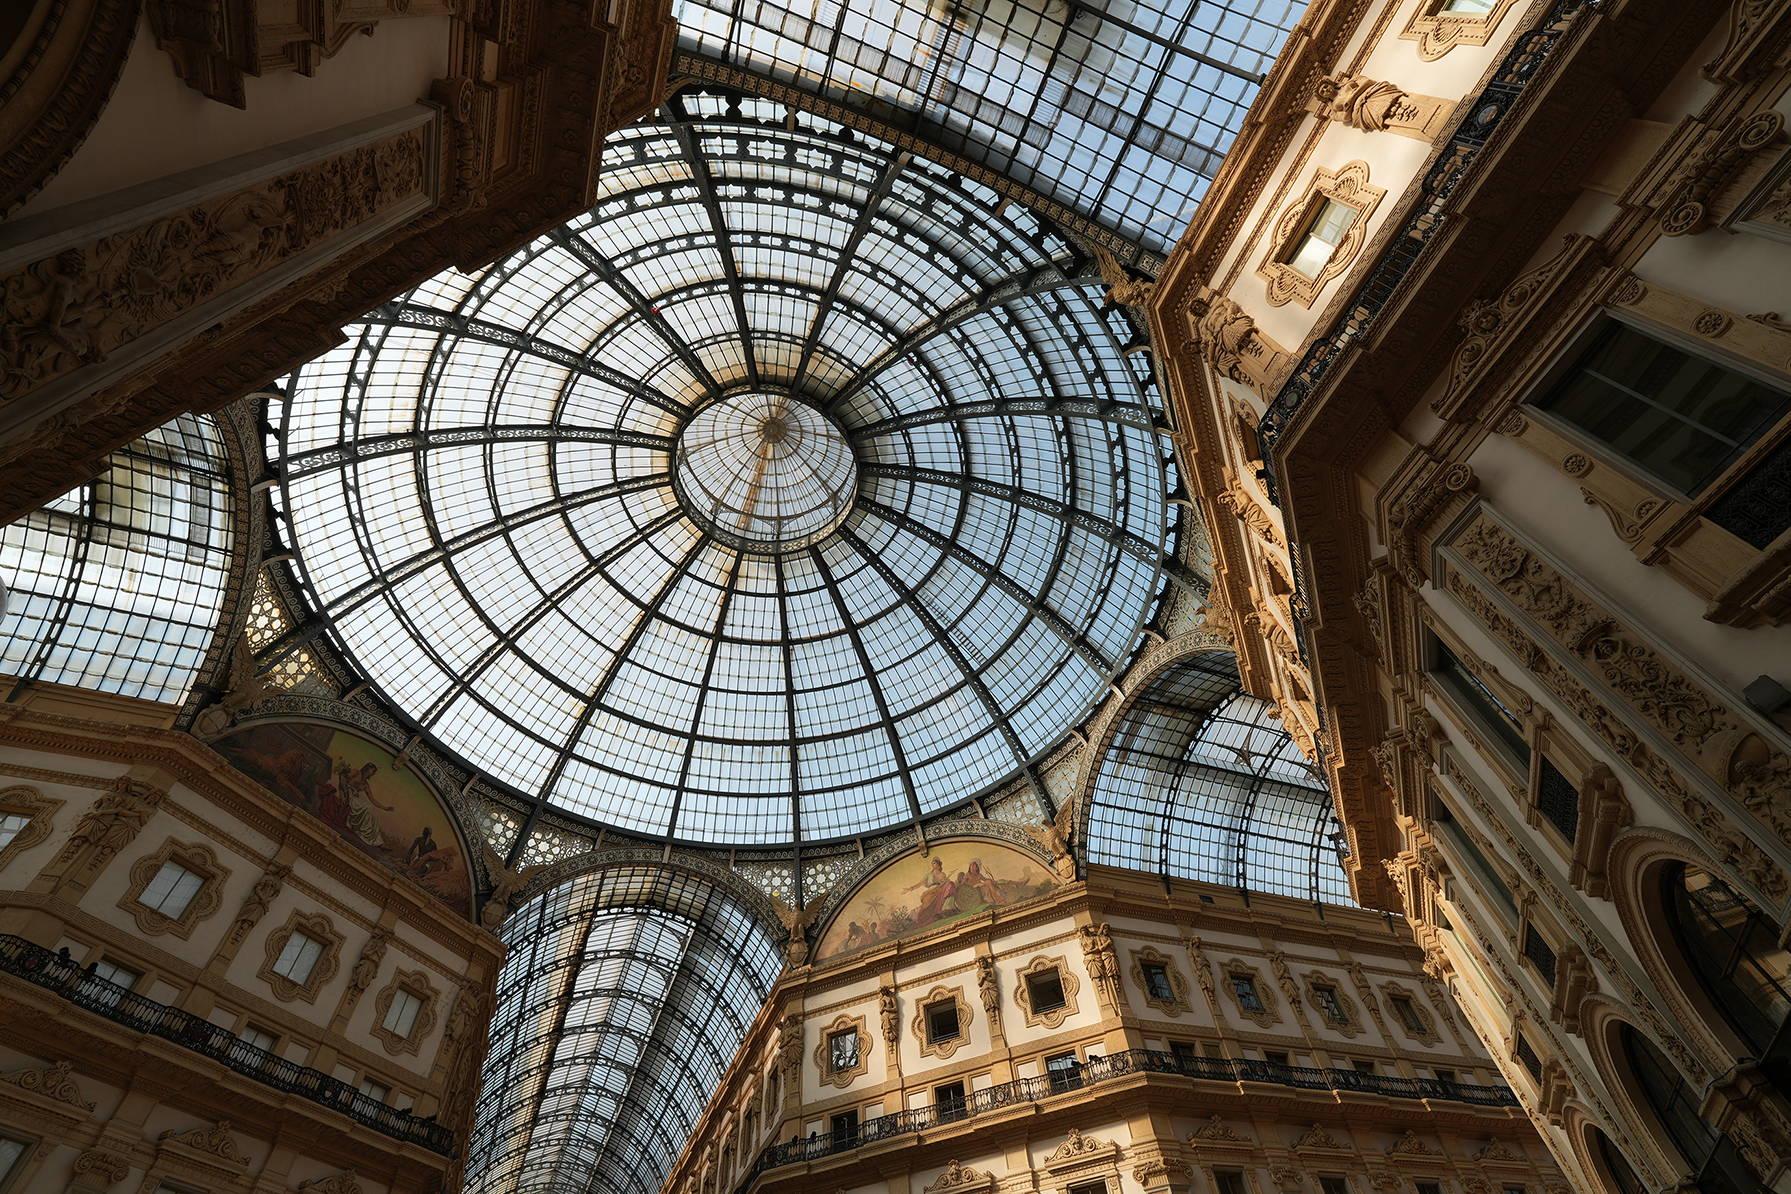 Ceiling of the Galleria Vittorio Emanuele II in Milan